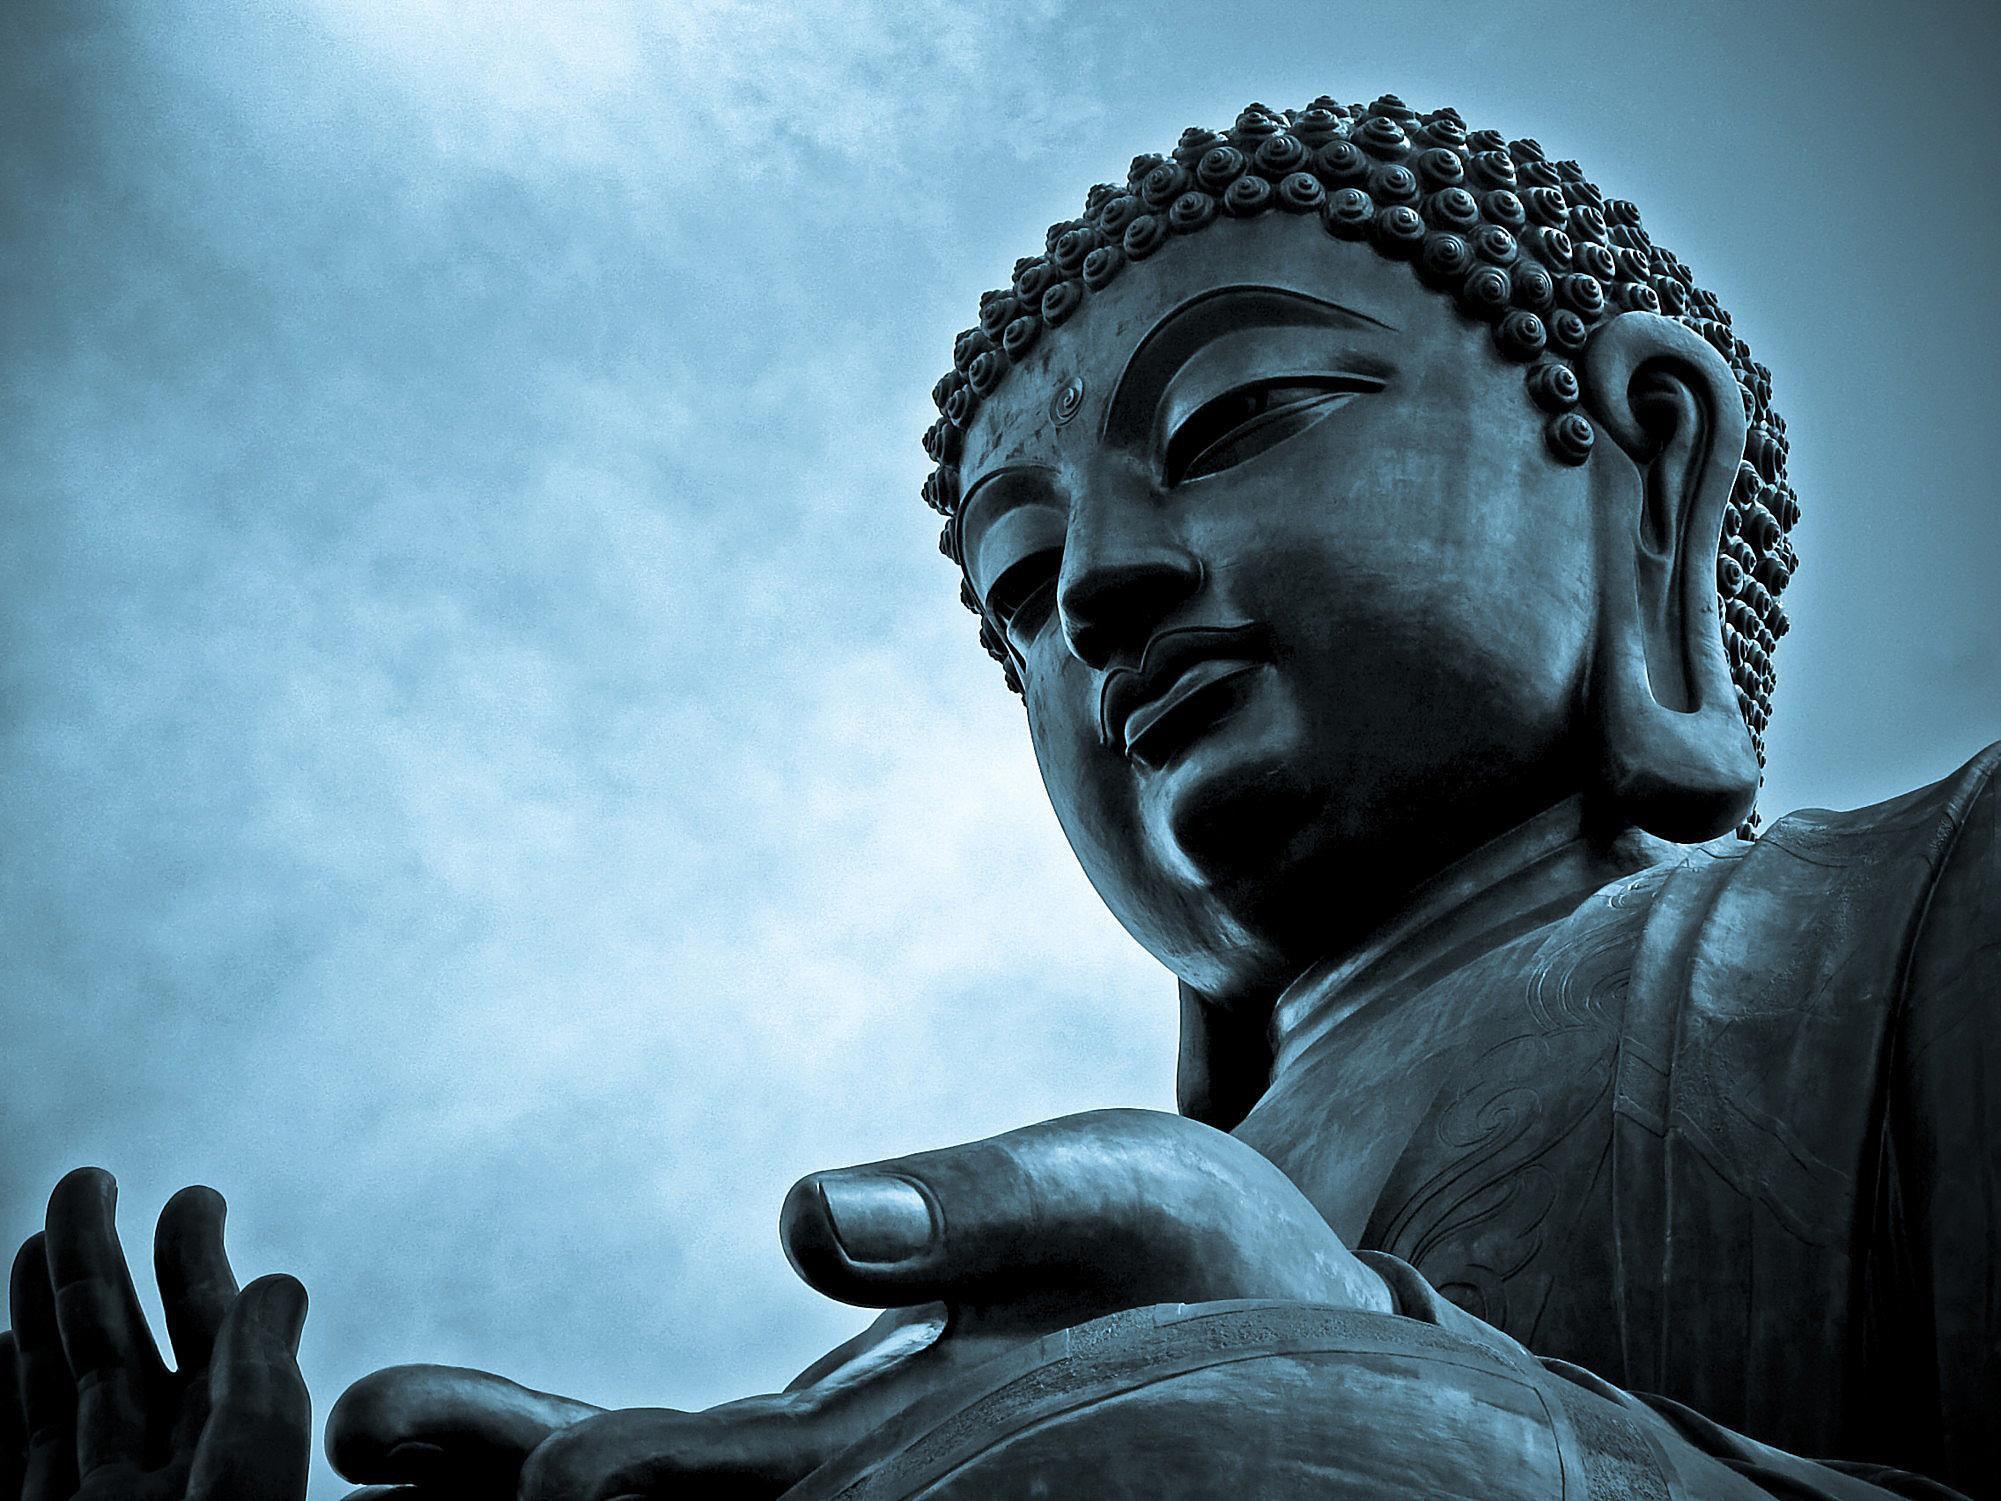 Картинка буда. Будда Гаутама. Сиддхартха Гаутама. Будда философ. Будда Шакьямуни фон.